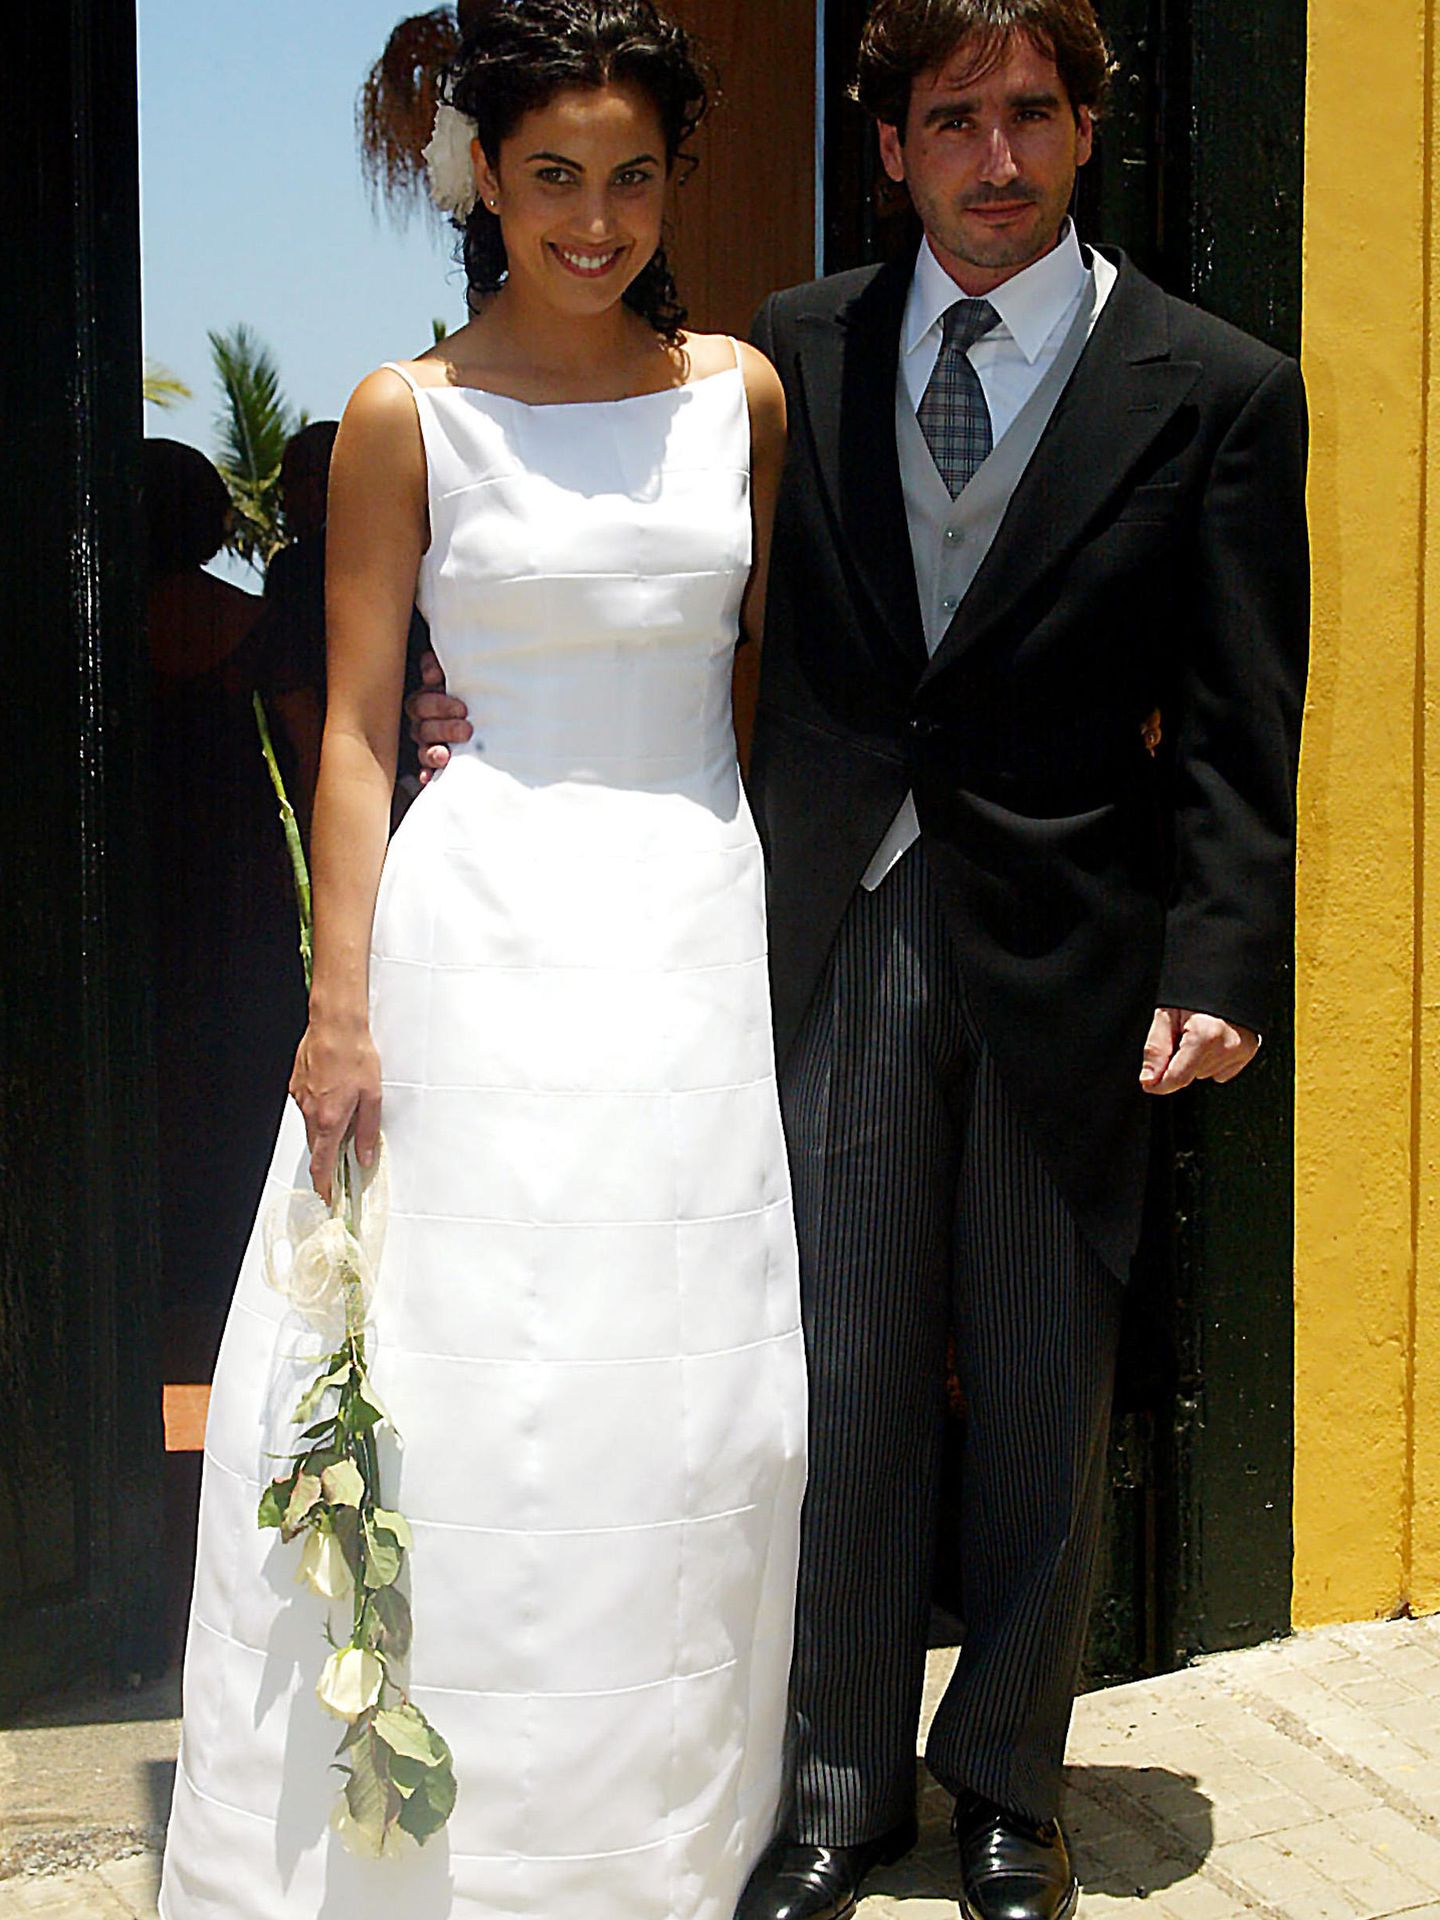 Jacobo Martos y Toni Acosta el día de su boda en Tenerife (2002)